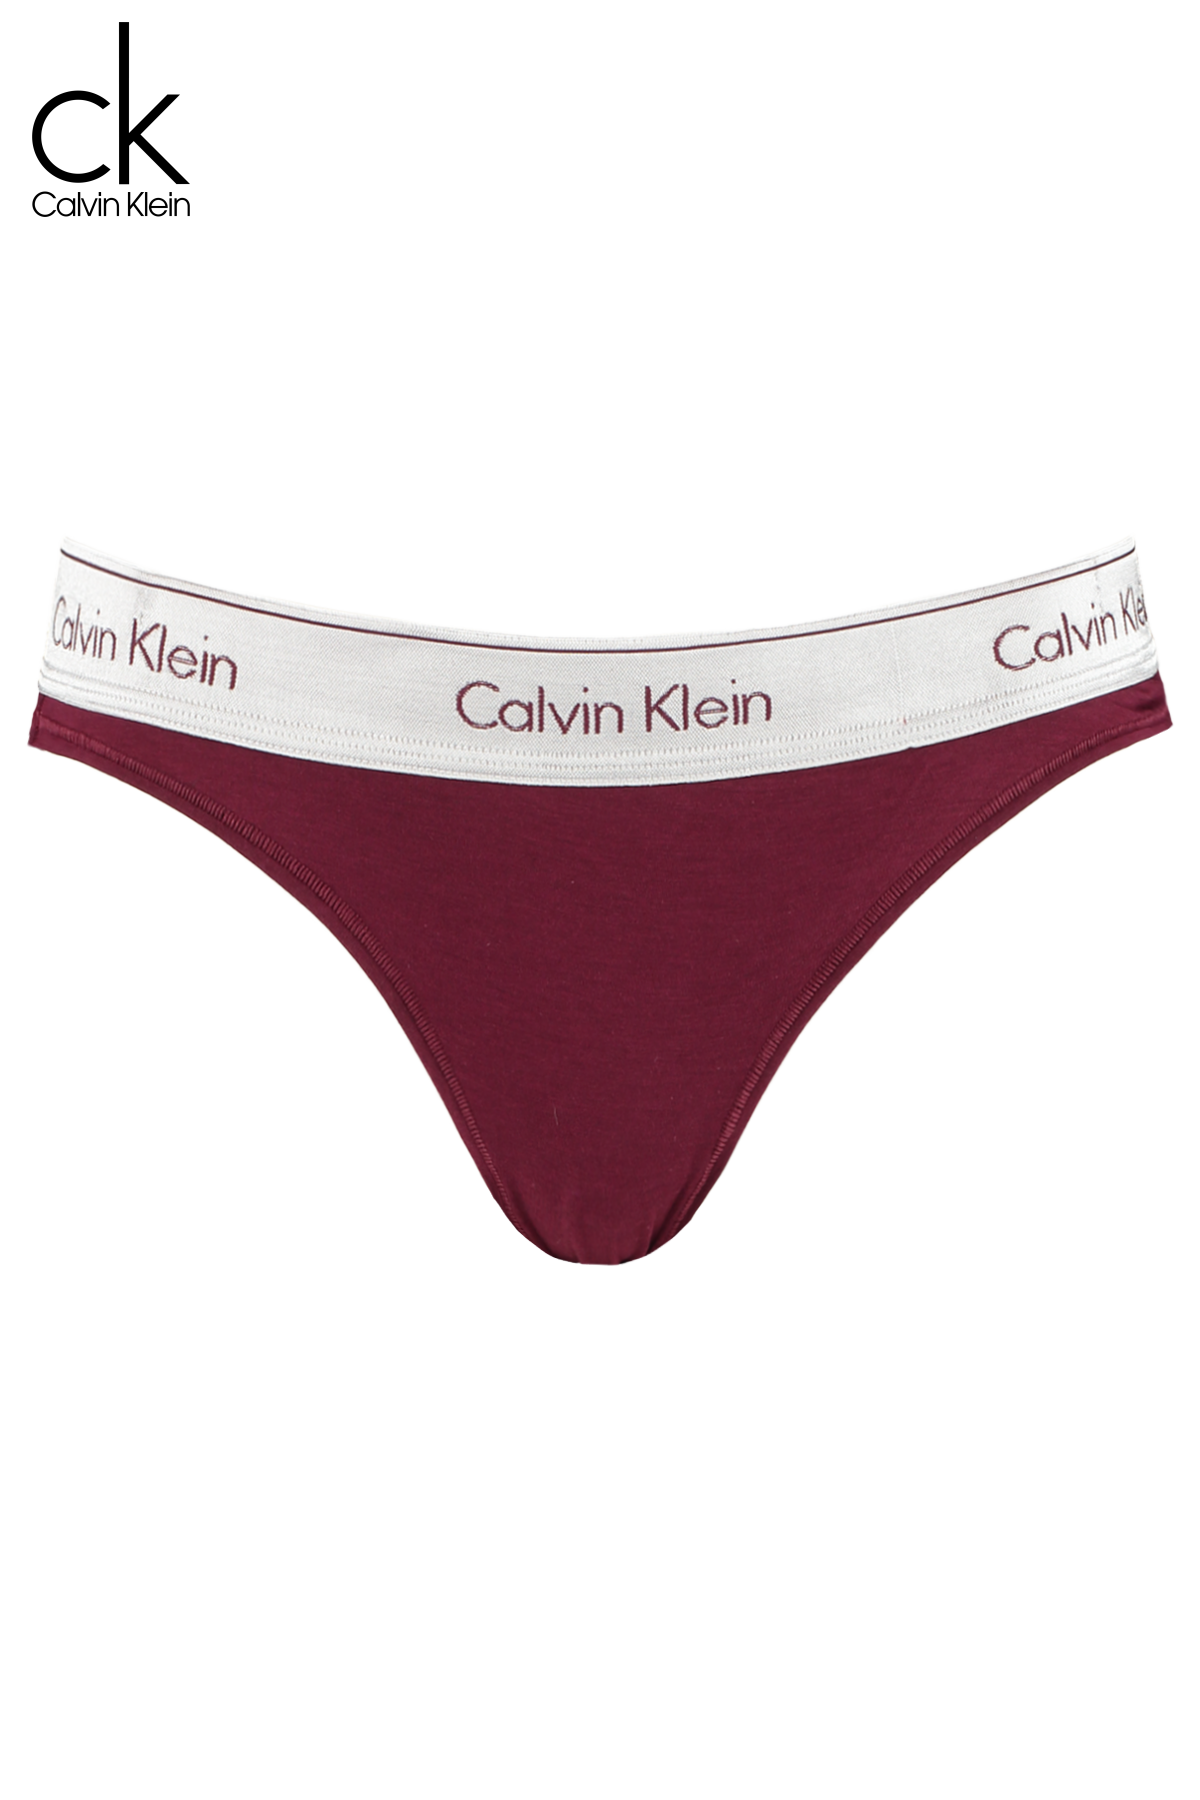 Damen Calvin Klein Slip Rot Online Kaufen